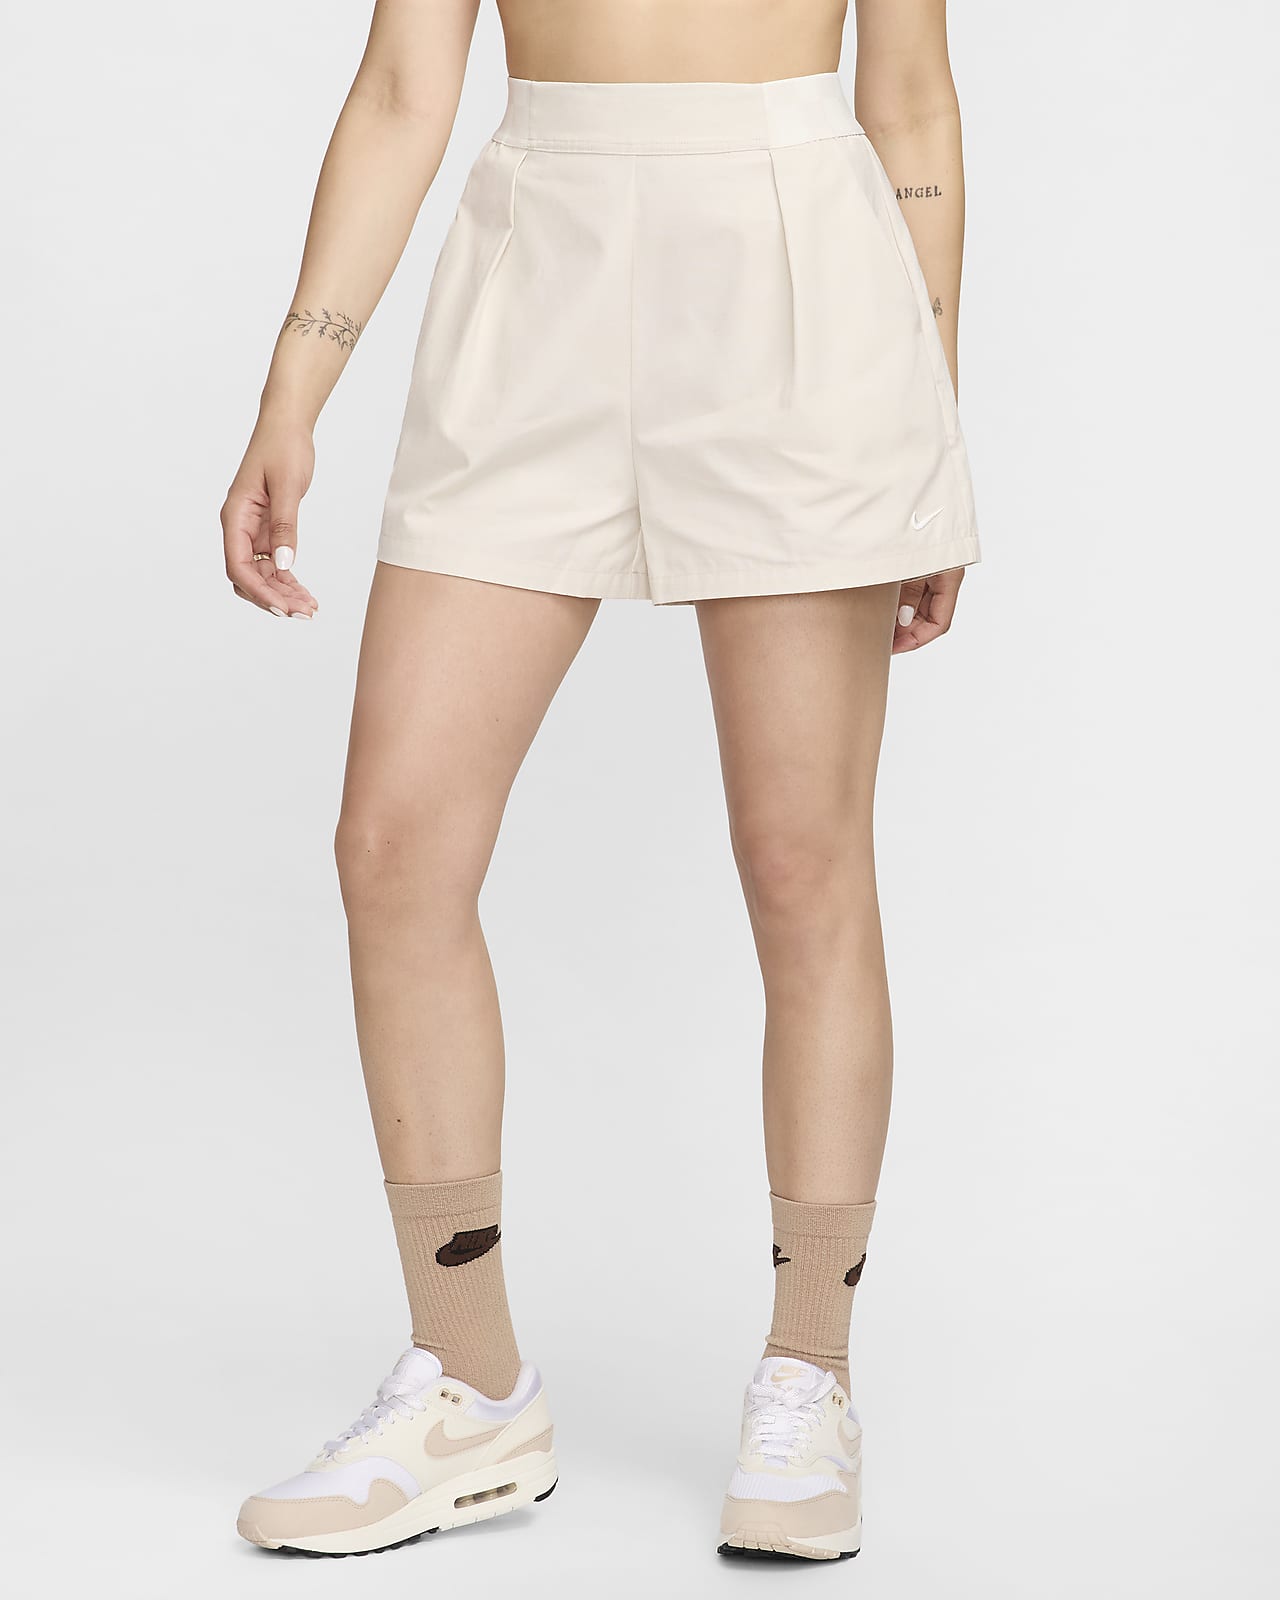 Shorts 8 cm a vita alta Nike Sportswear Collection – Donna